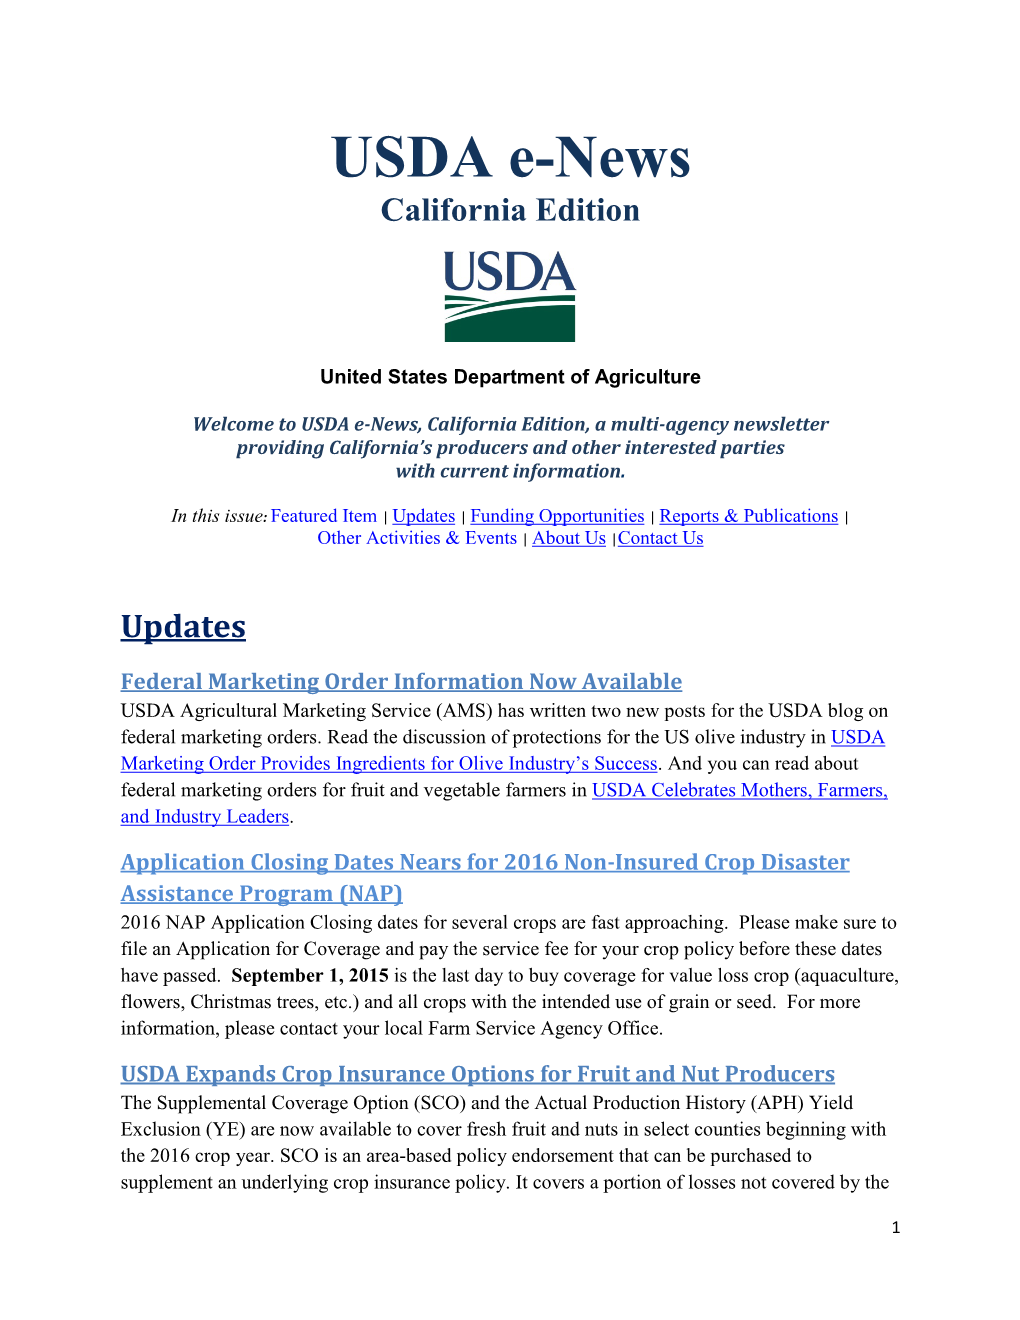 USDA E-News California Edition